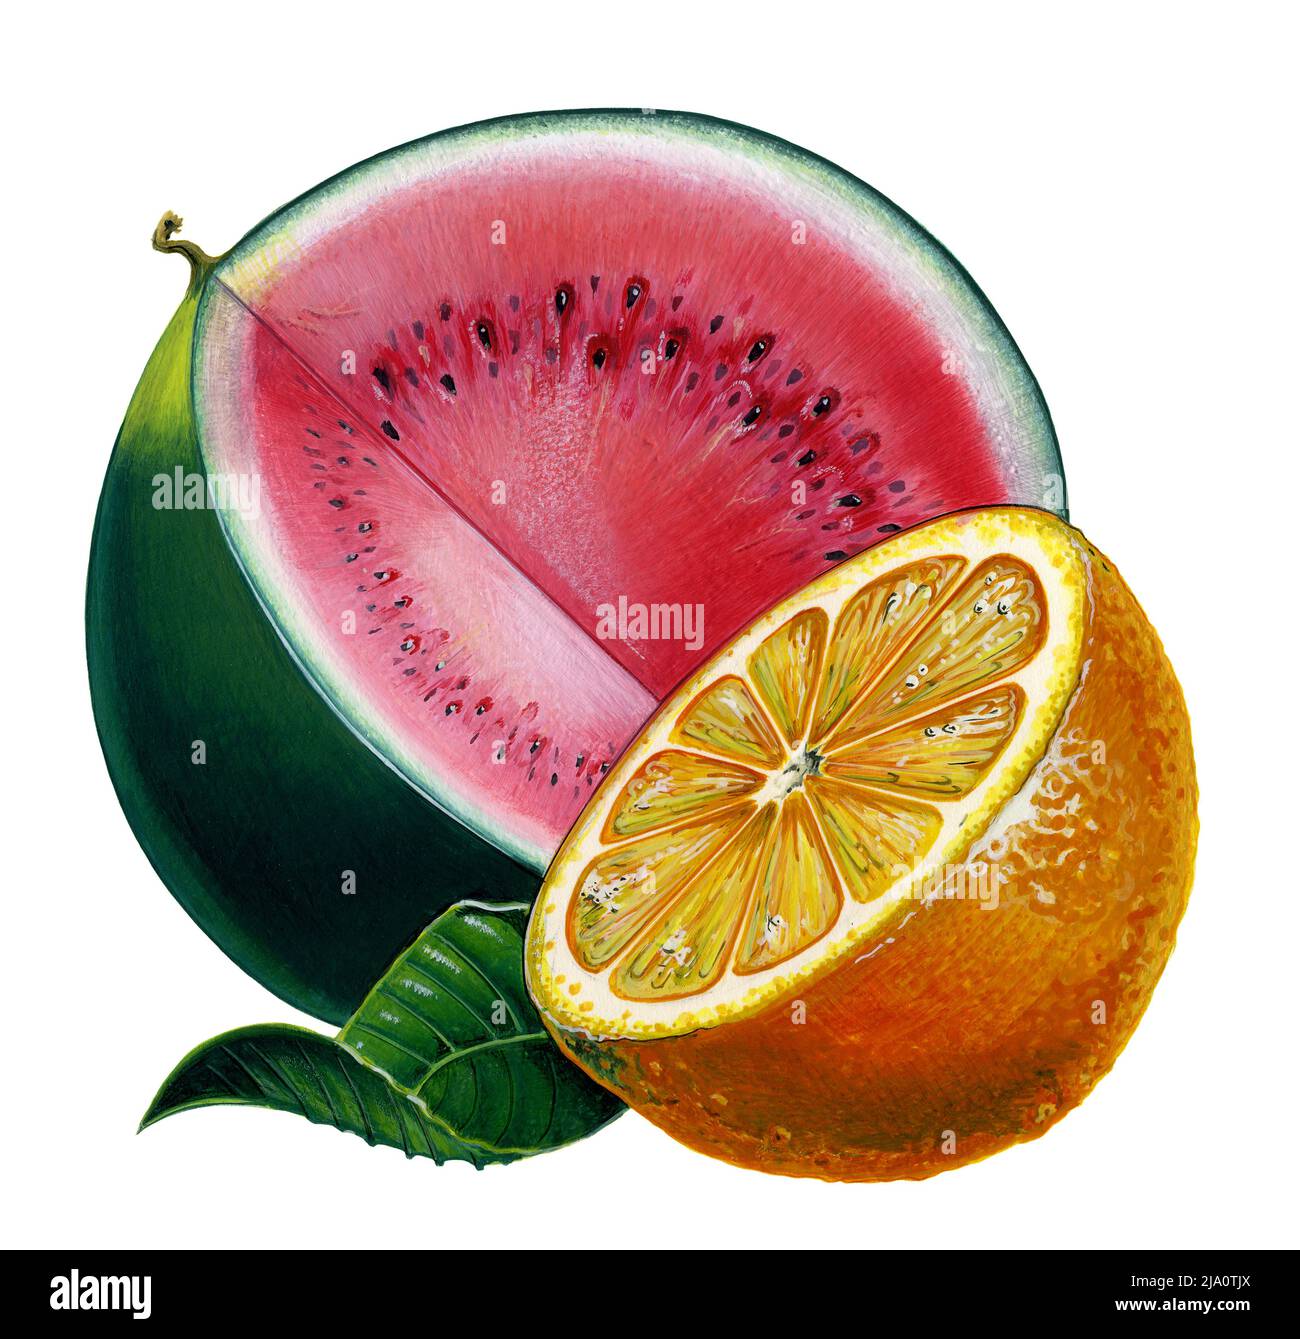 Illustration d'un melon d'eau et d'une orange avec une feuille à fond blanc Banque D'Images